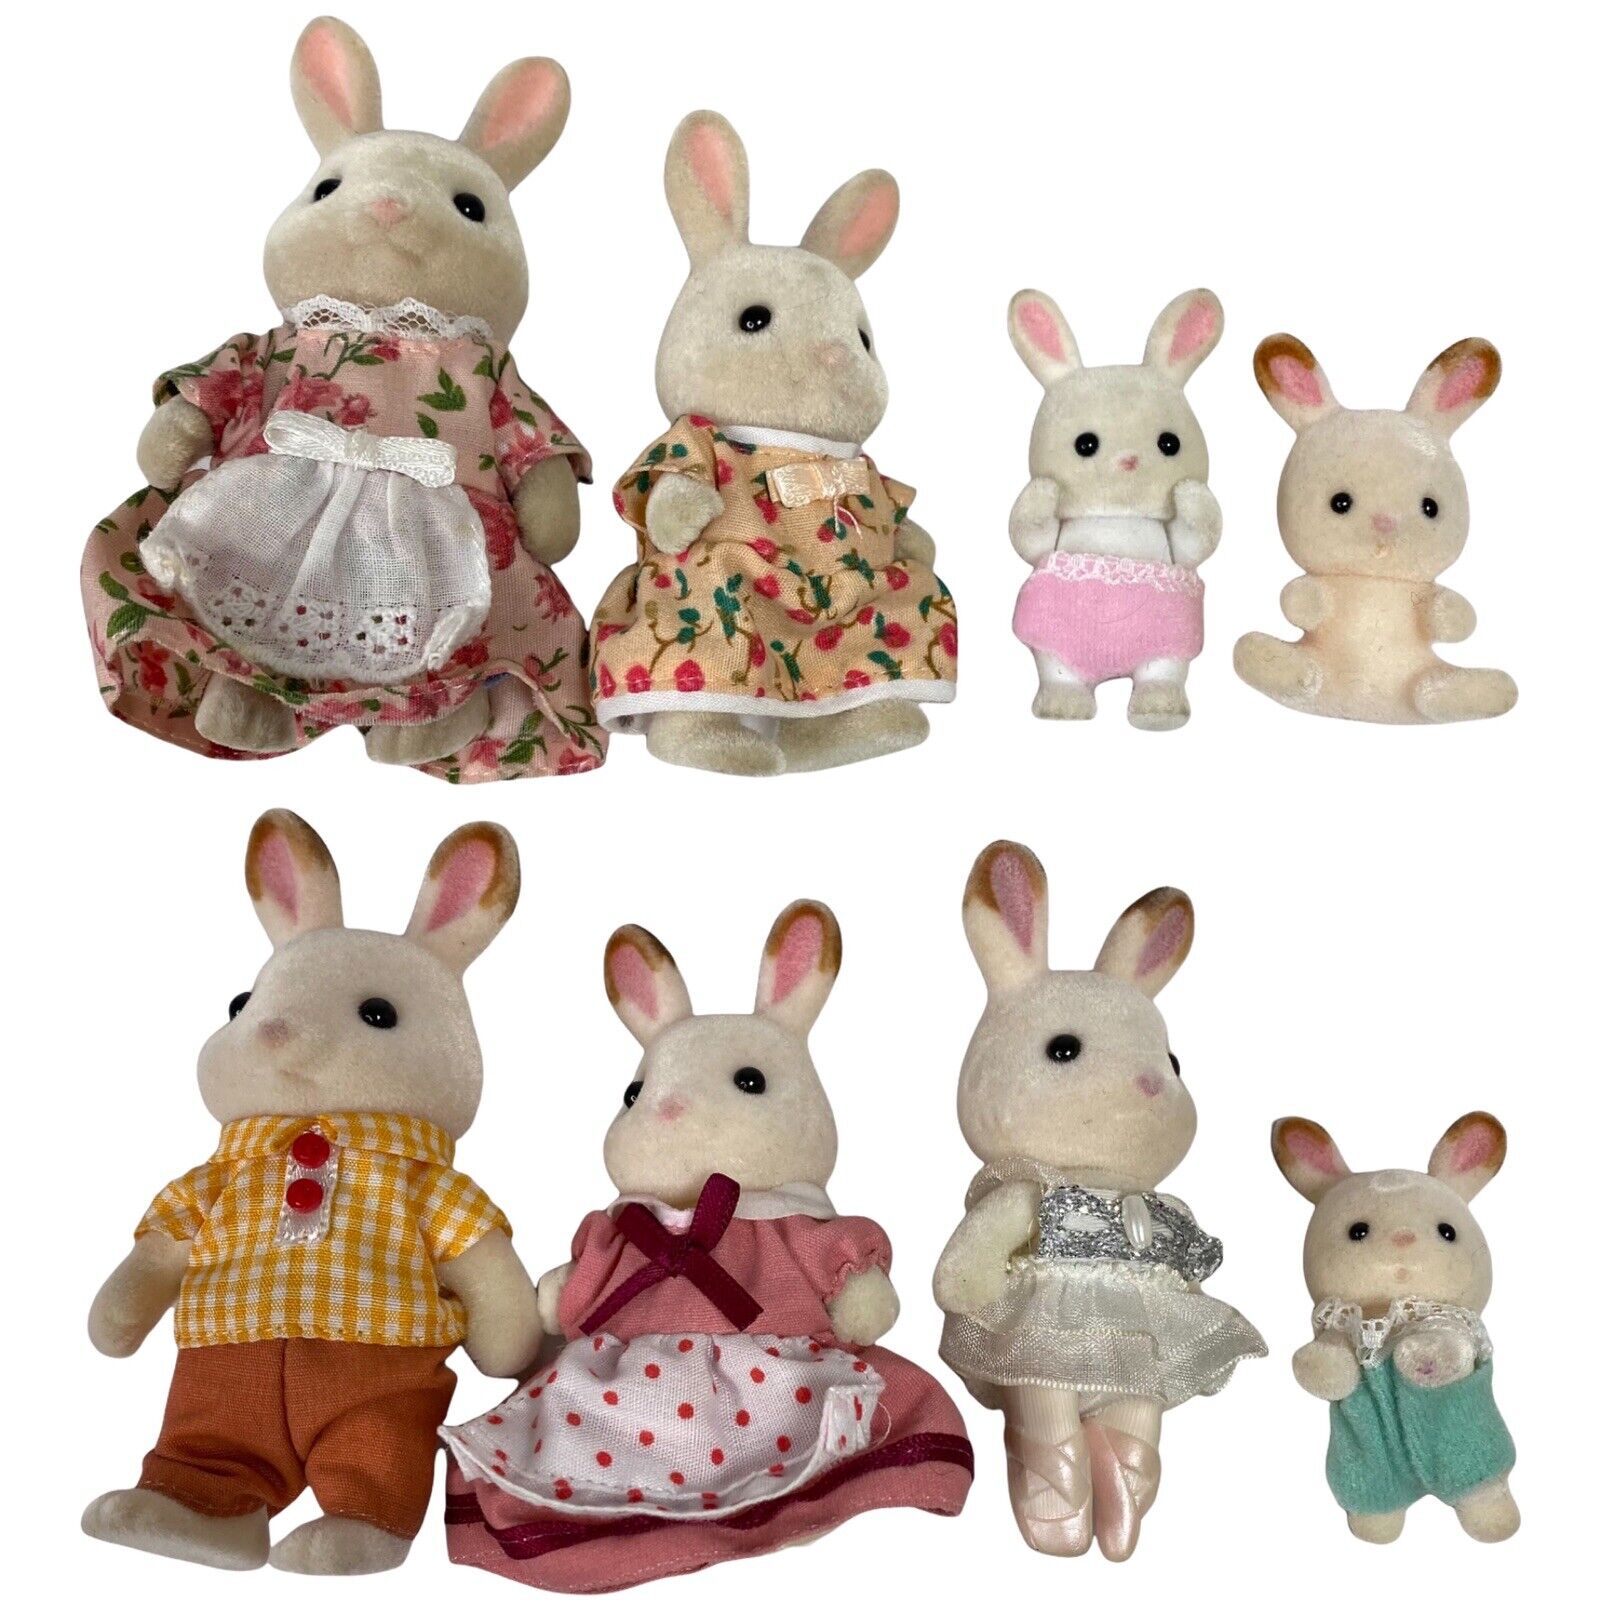 Calico Critters Bunny Rabbit Family Lot | eBay